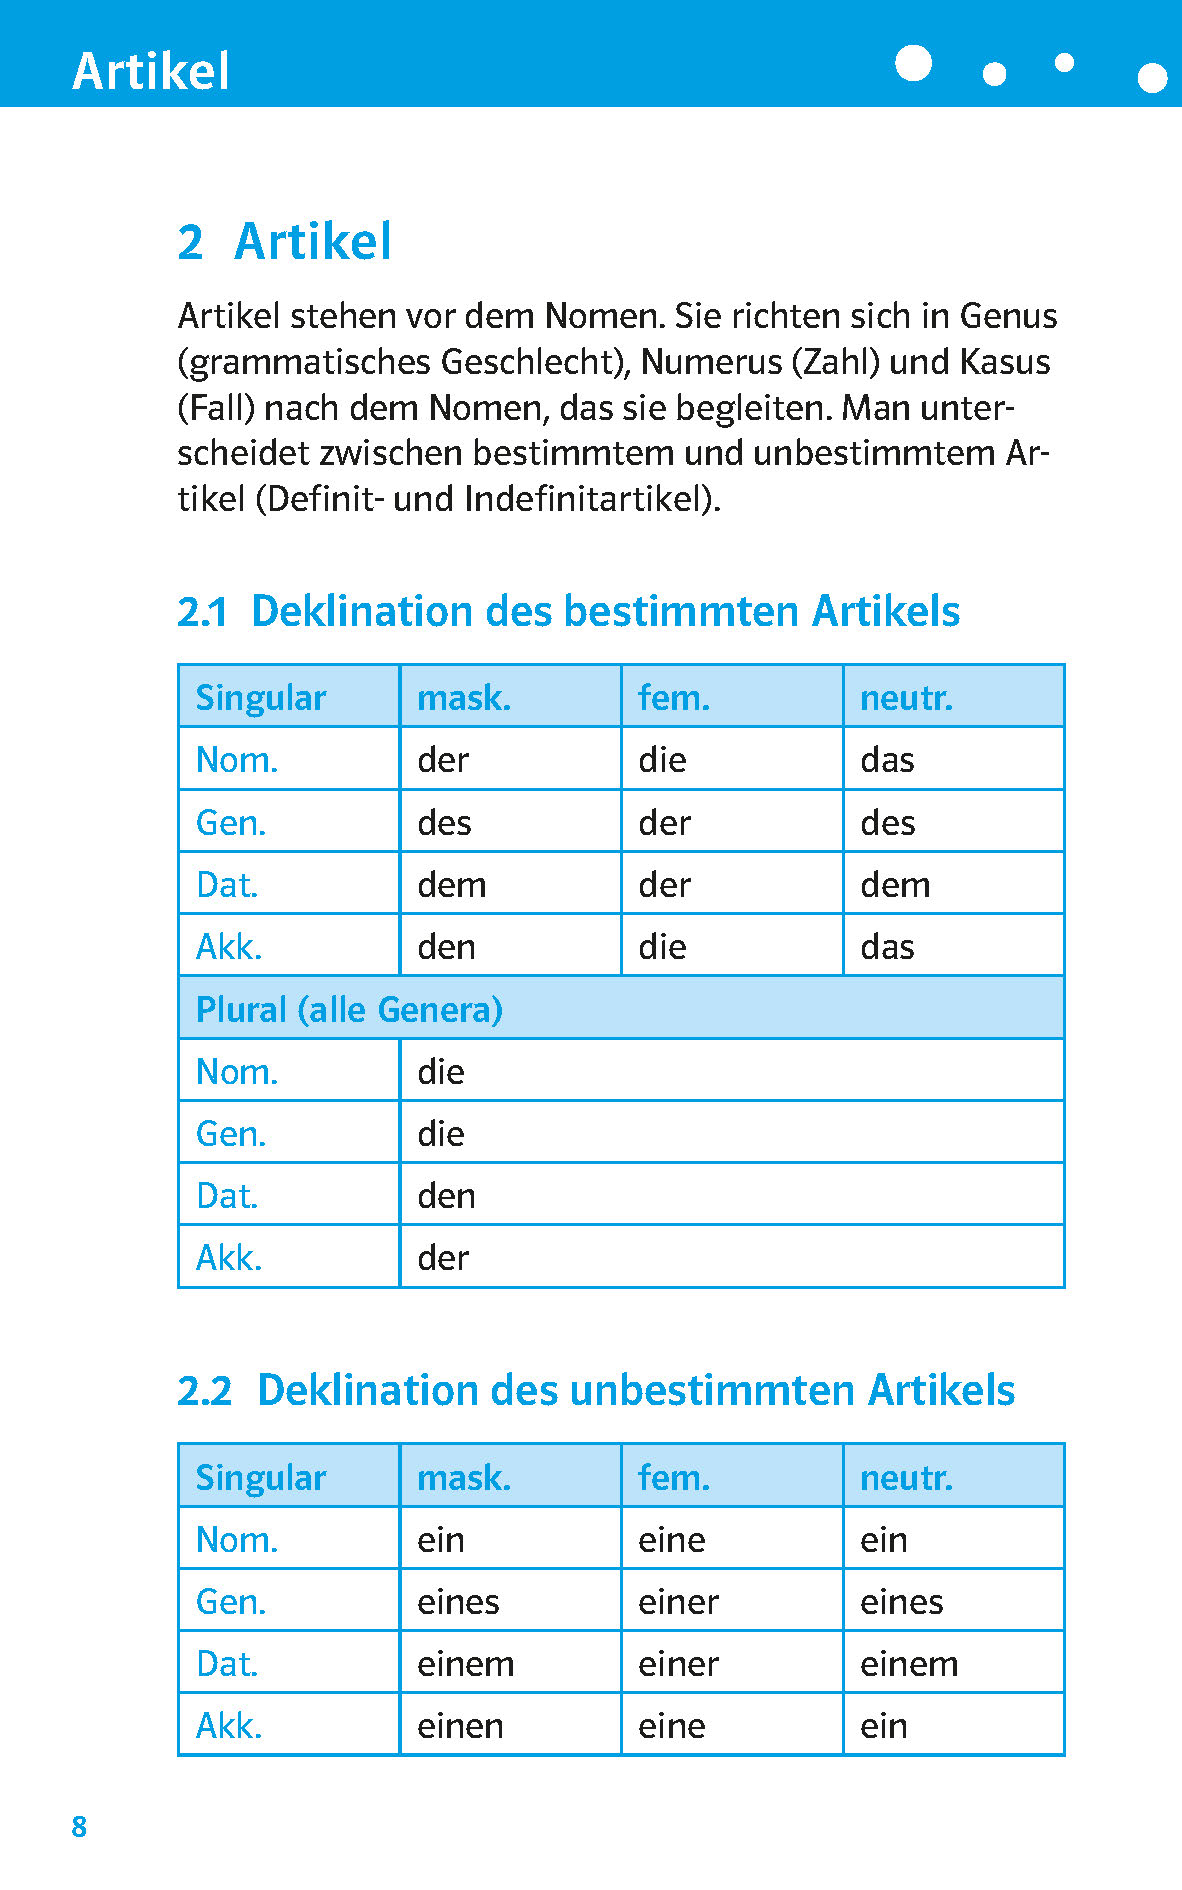 PONS Pocket-Schulgrammatik Deutsch